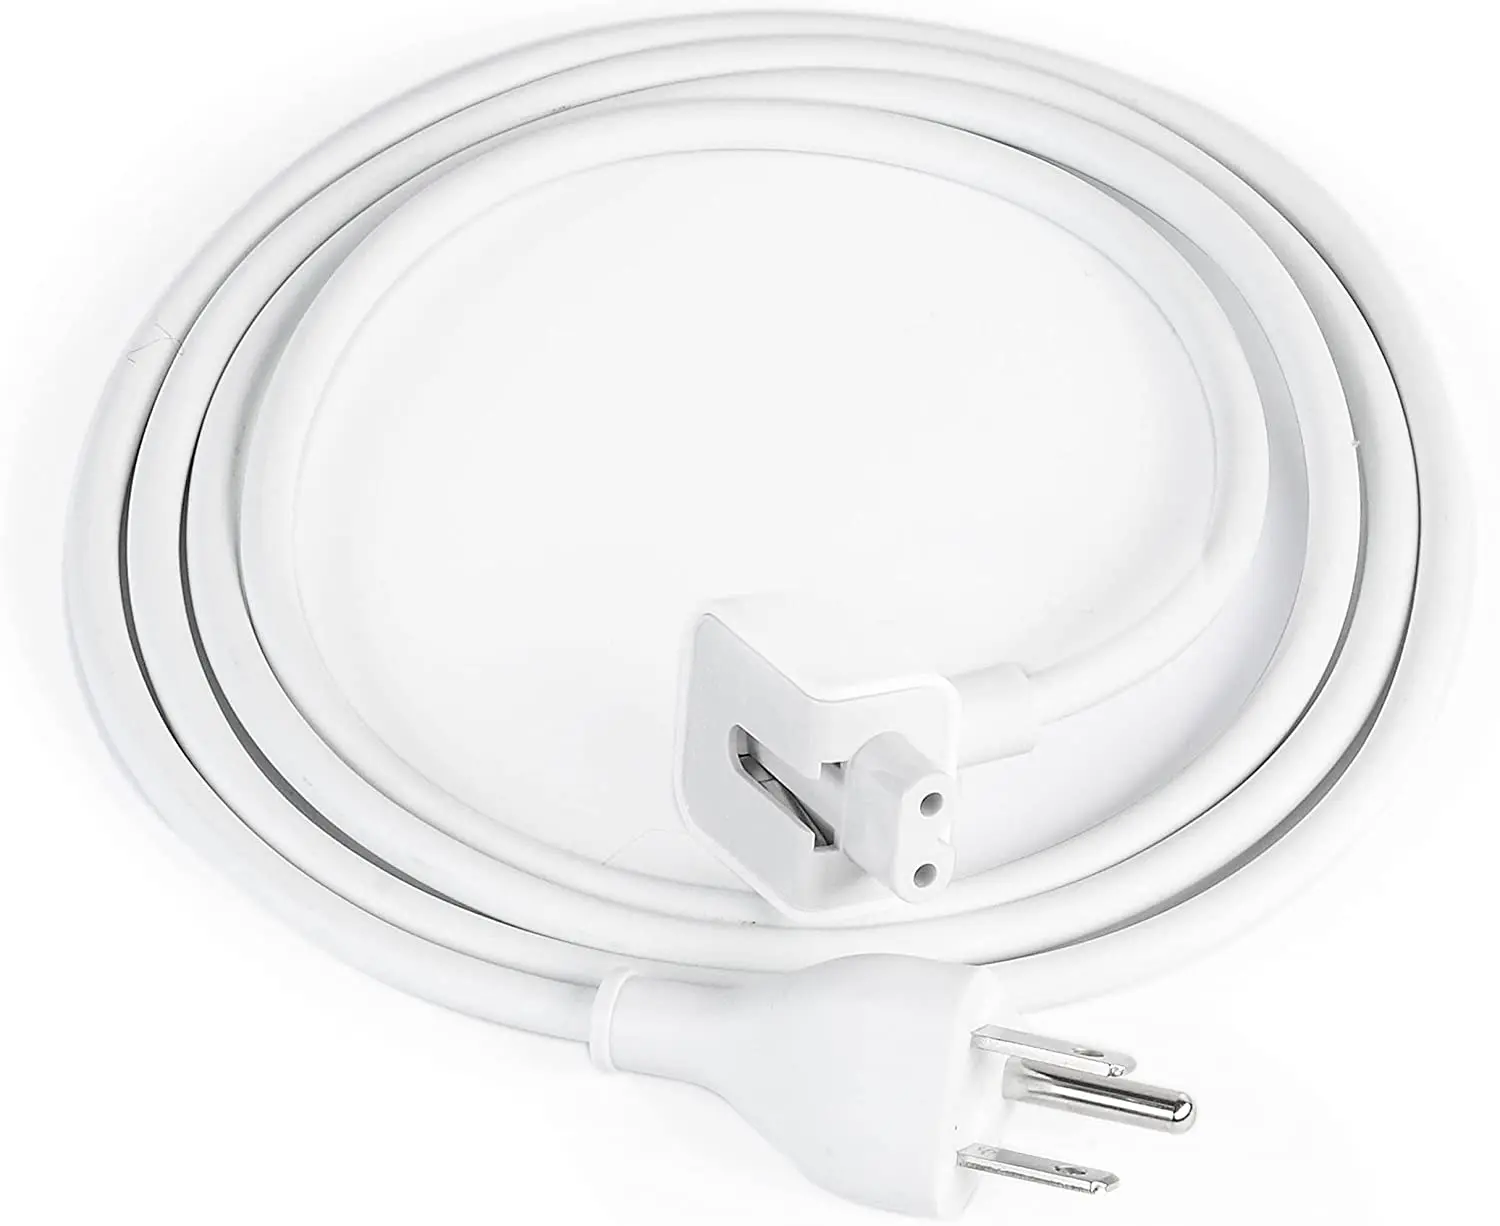 Удлинительный кабель адаптера питания, совместимый с Mac Book Pro, Mac Book, Mac Book Air, US EU AU UK Plug 6 ft